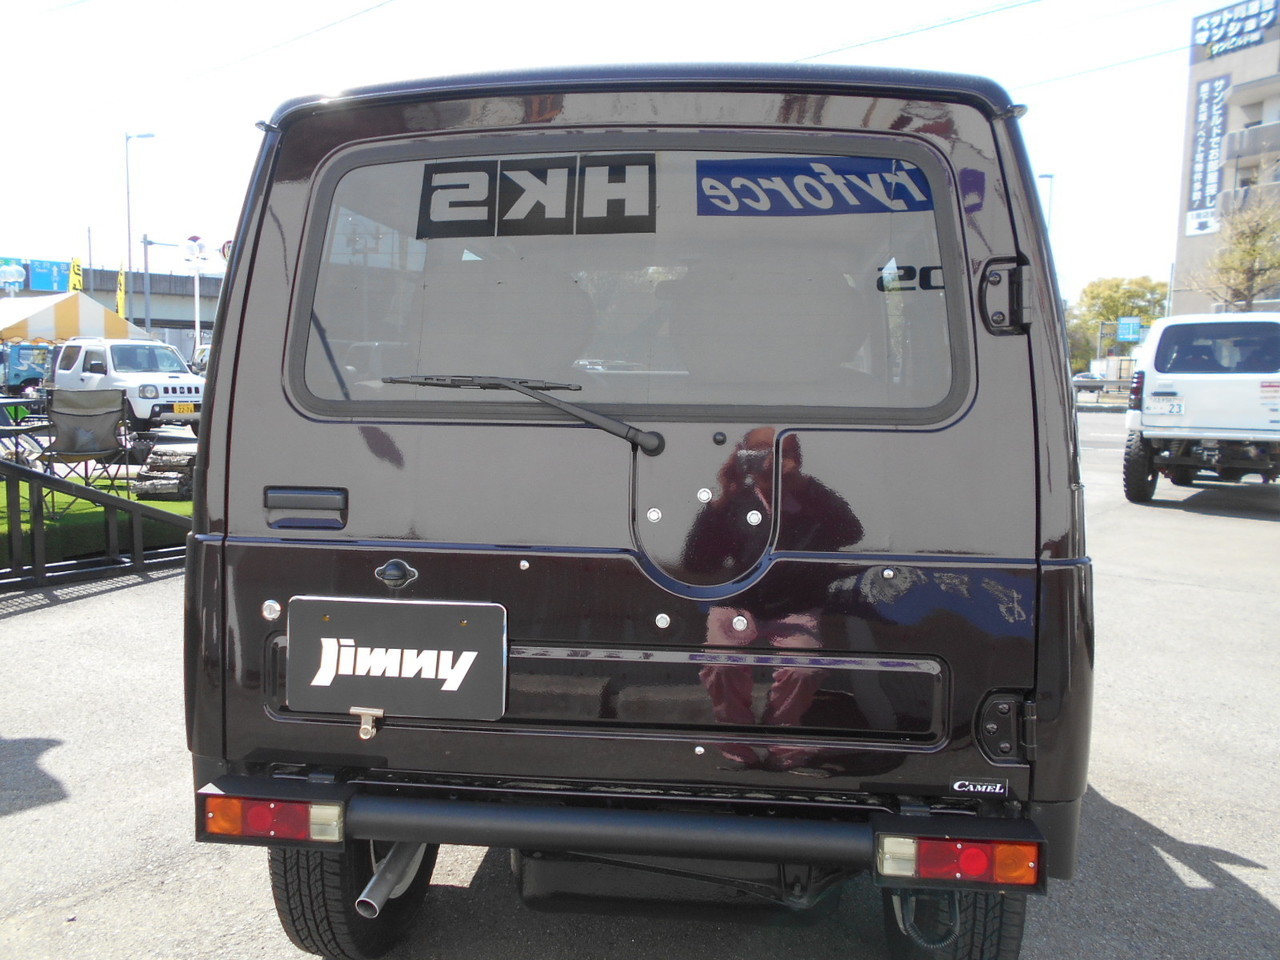 ジムニー JA22 ワイルドウインド 中古車在庫情報 | ジムニー専門店『ジムニースタジオ』